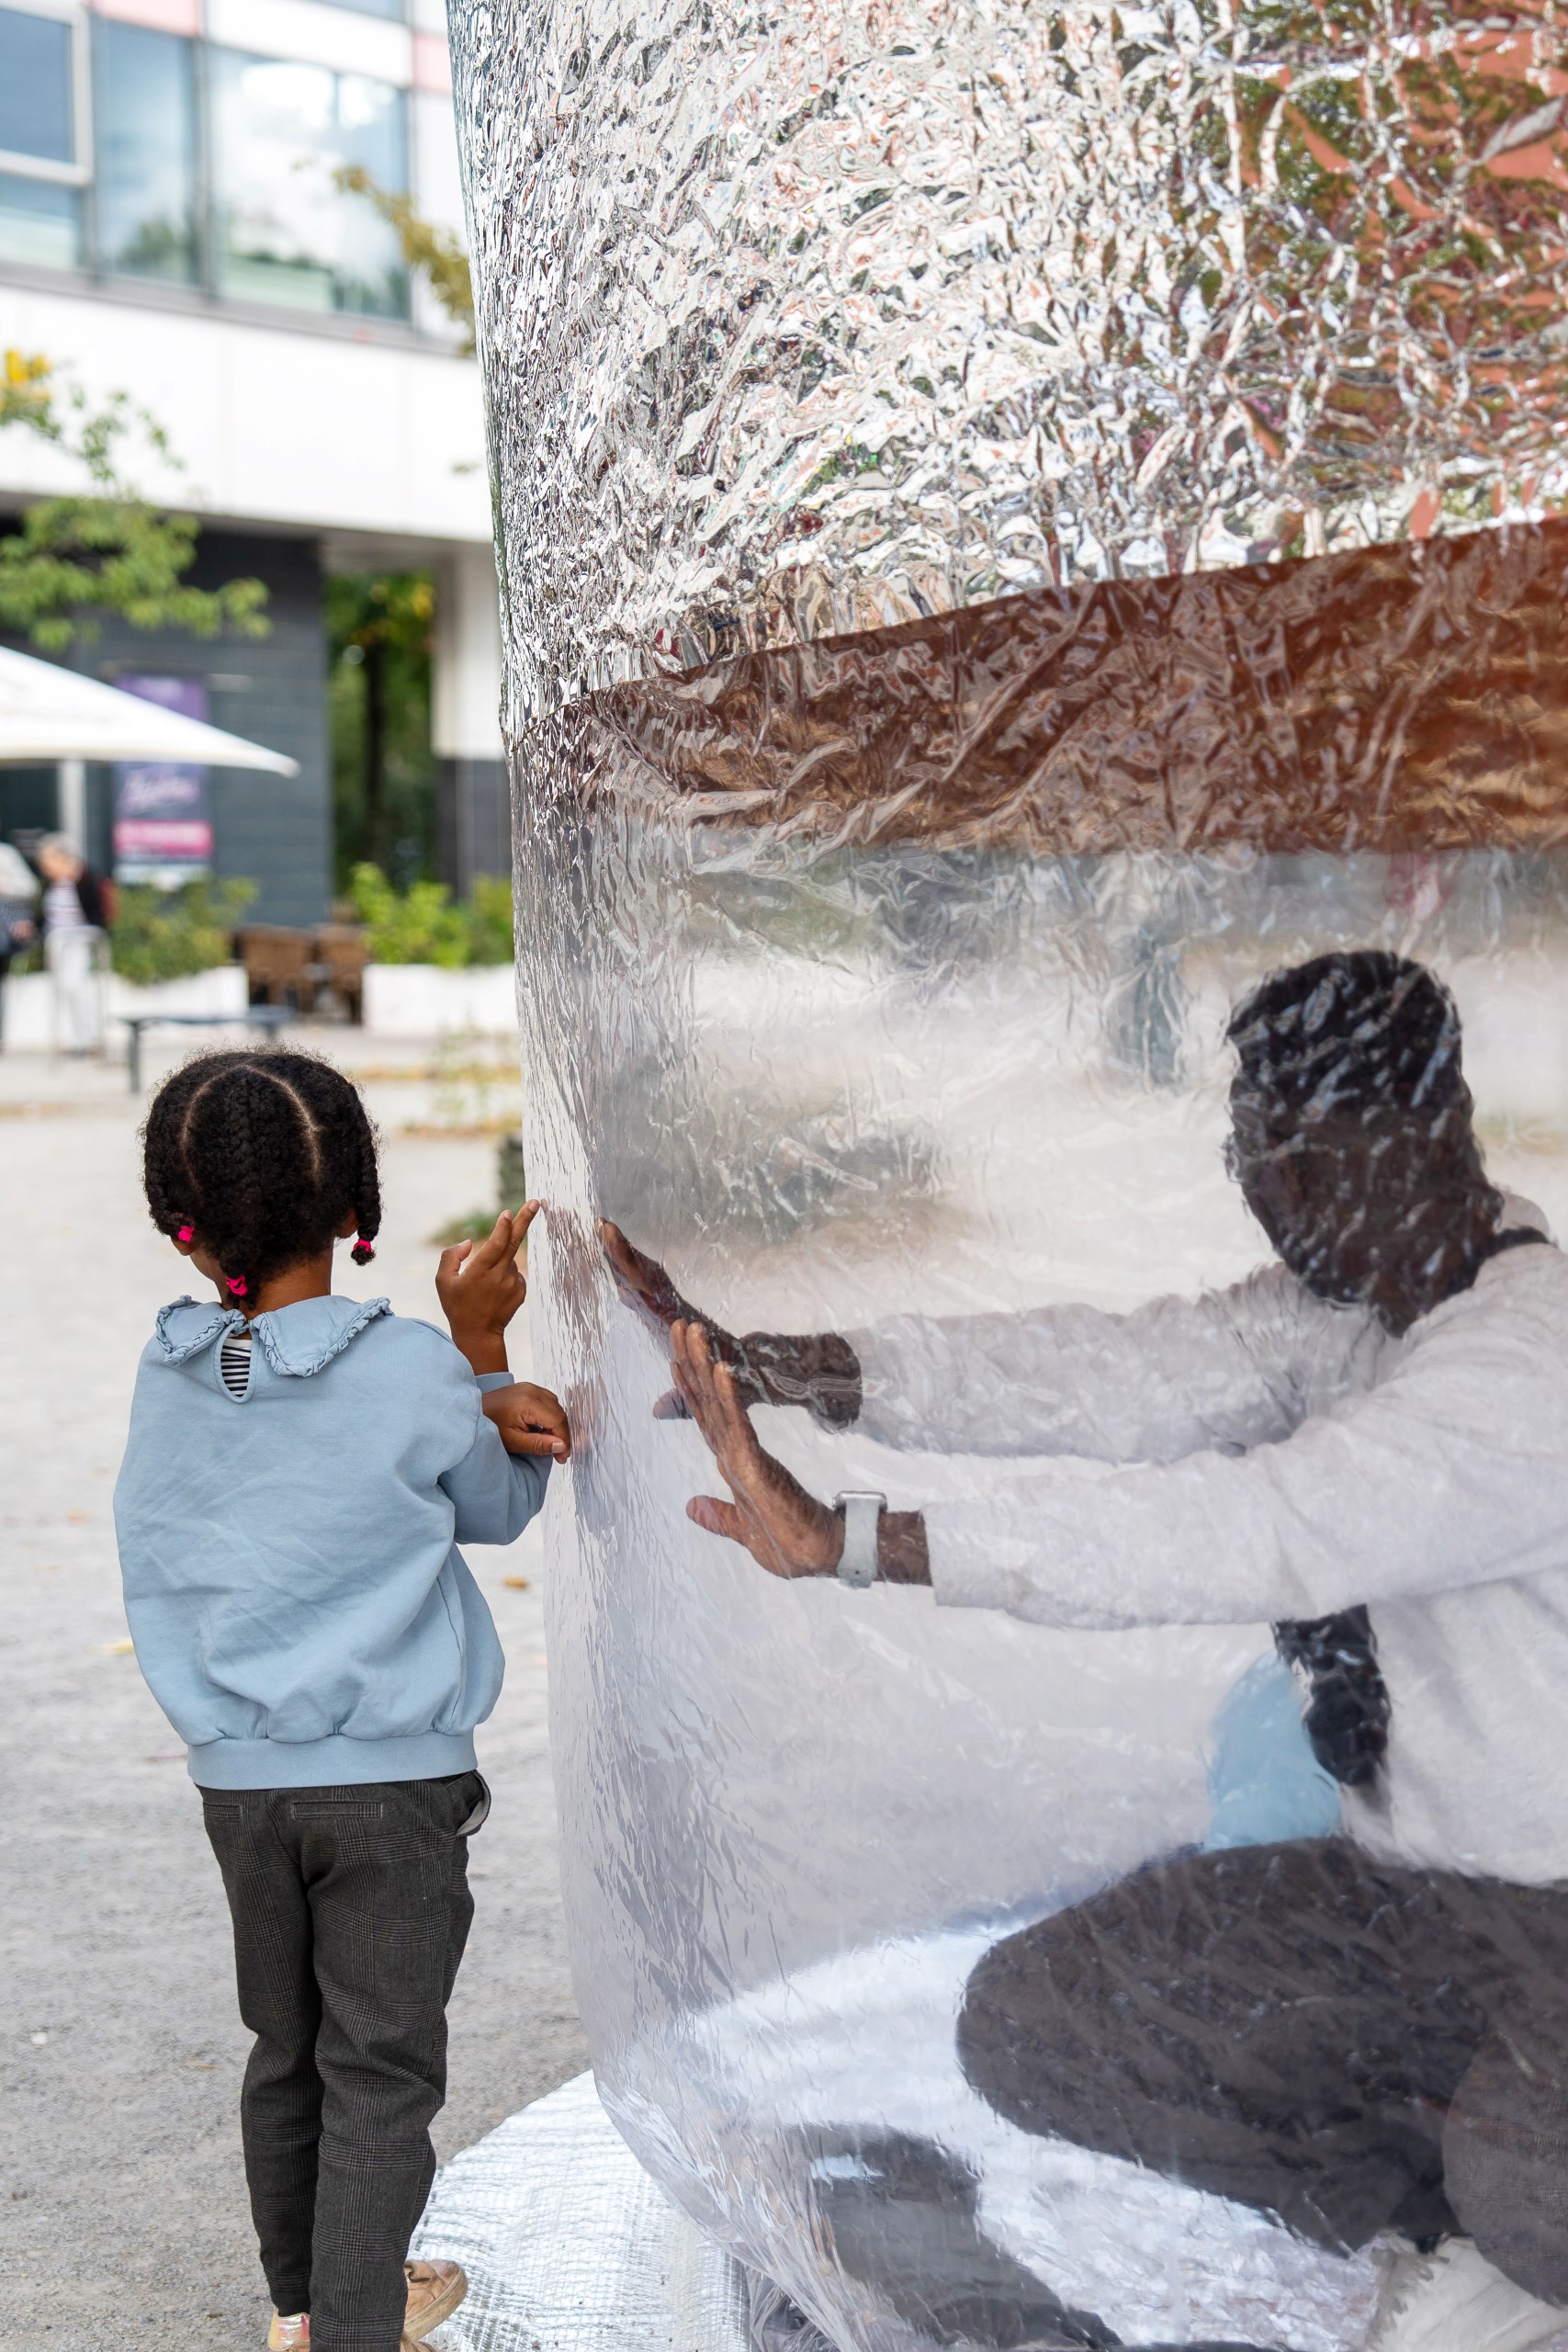 Besucher:innen in der konischen aufblasbaren Installation von Popticum mit unterem transparenten und oben silbernen Teil